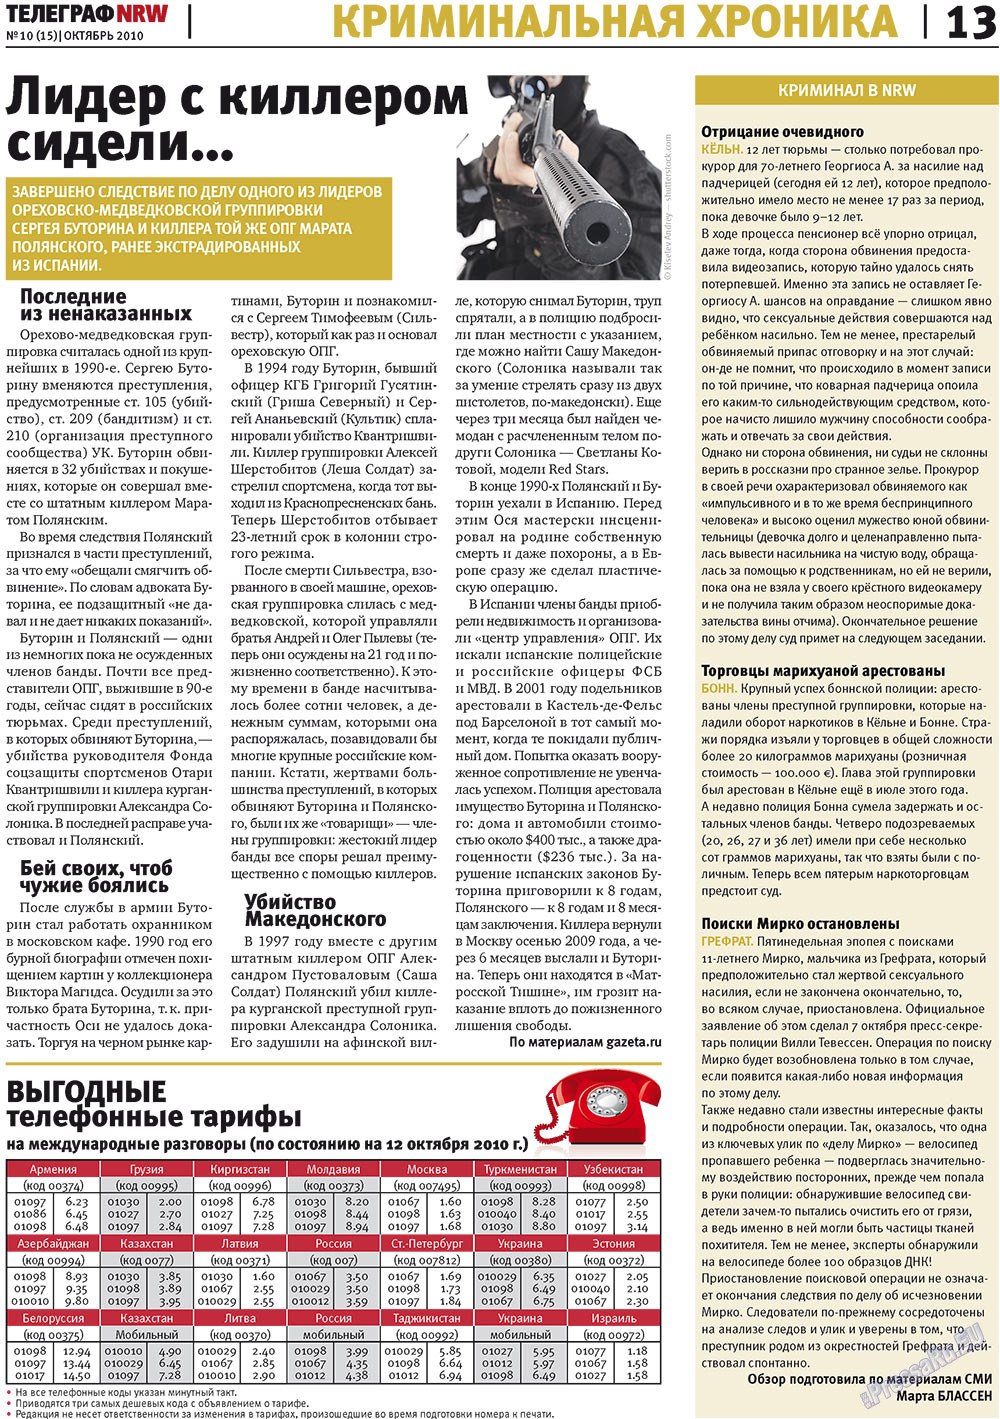 Телеграф NRW (газета). 2010 год, номер 10, стр. 13